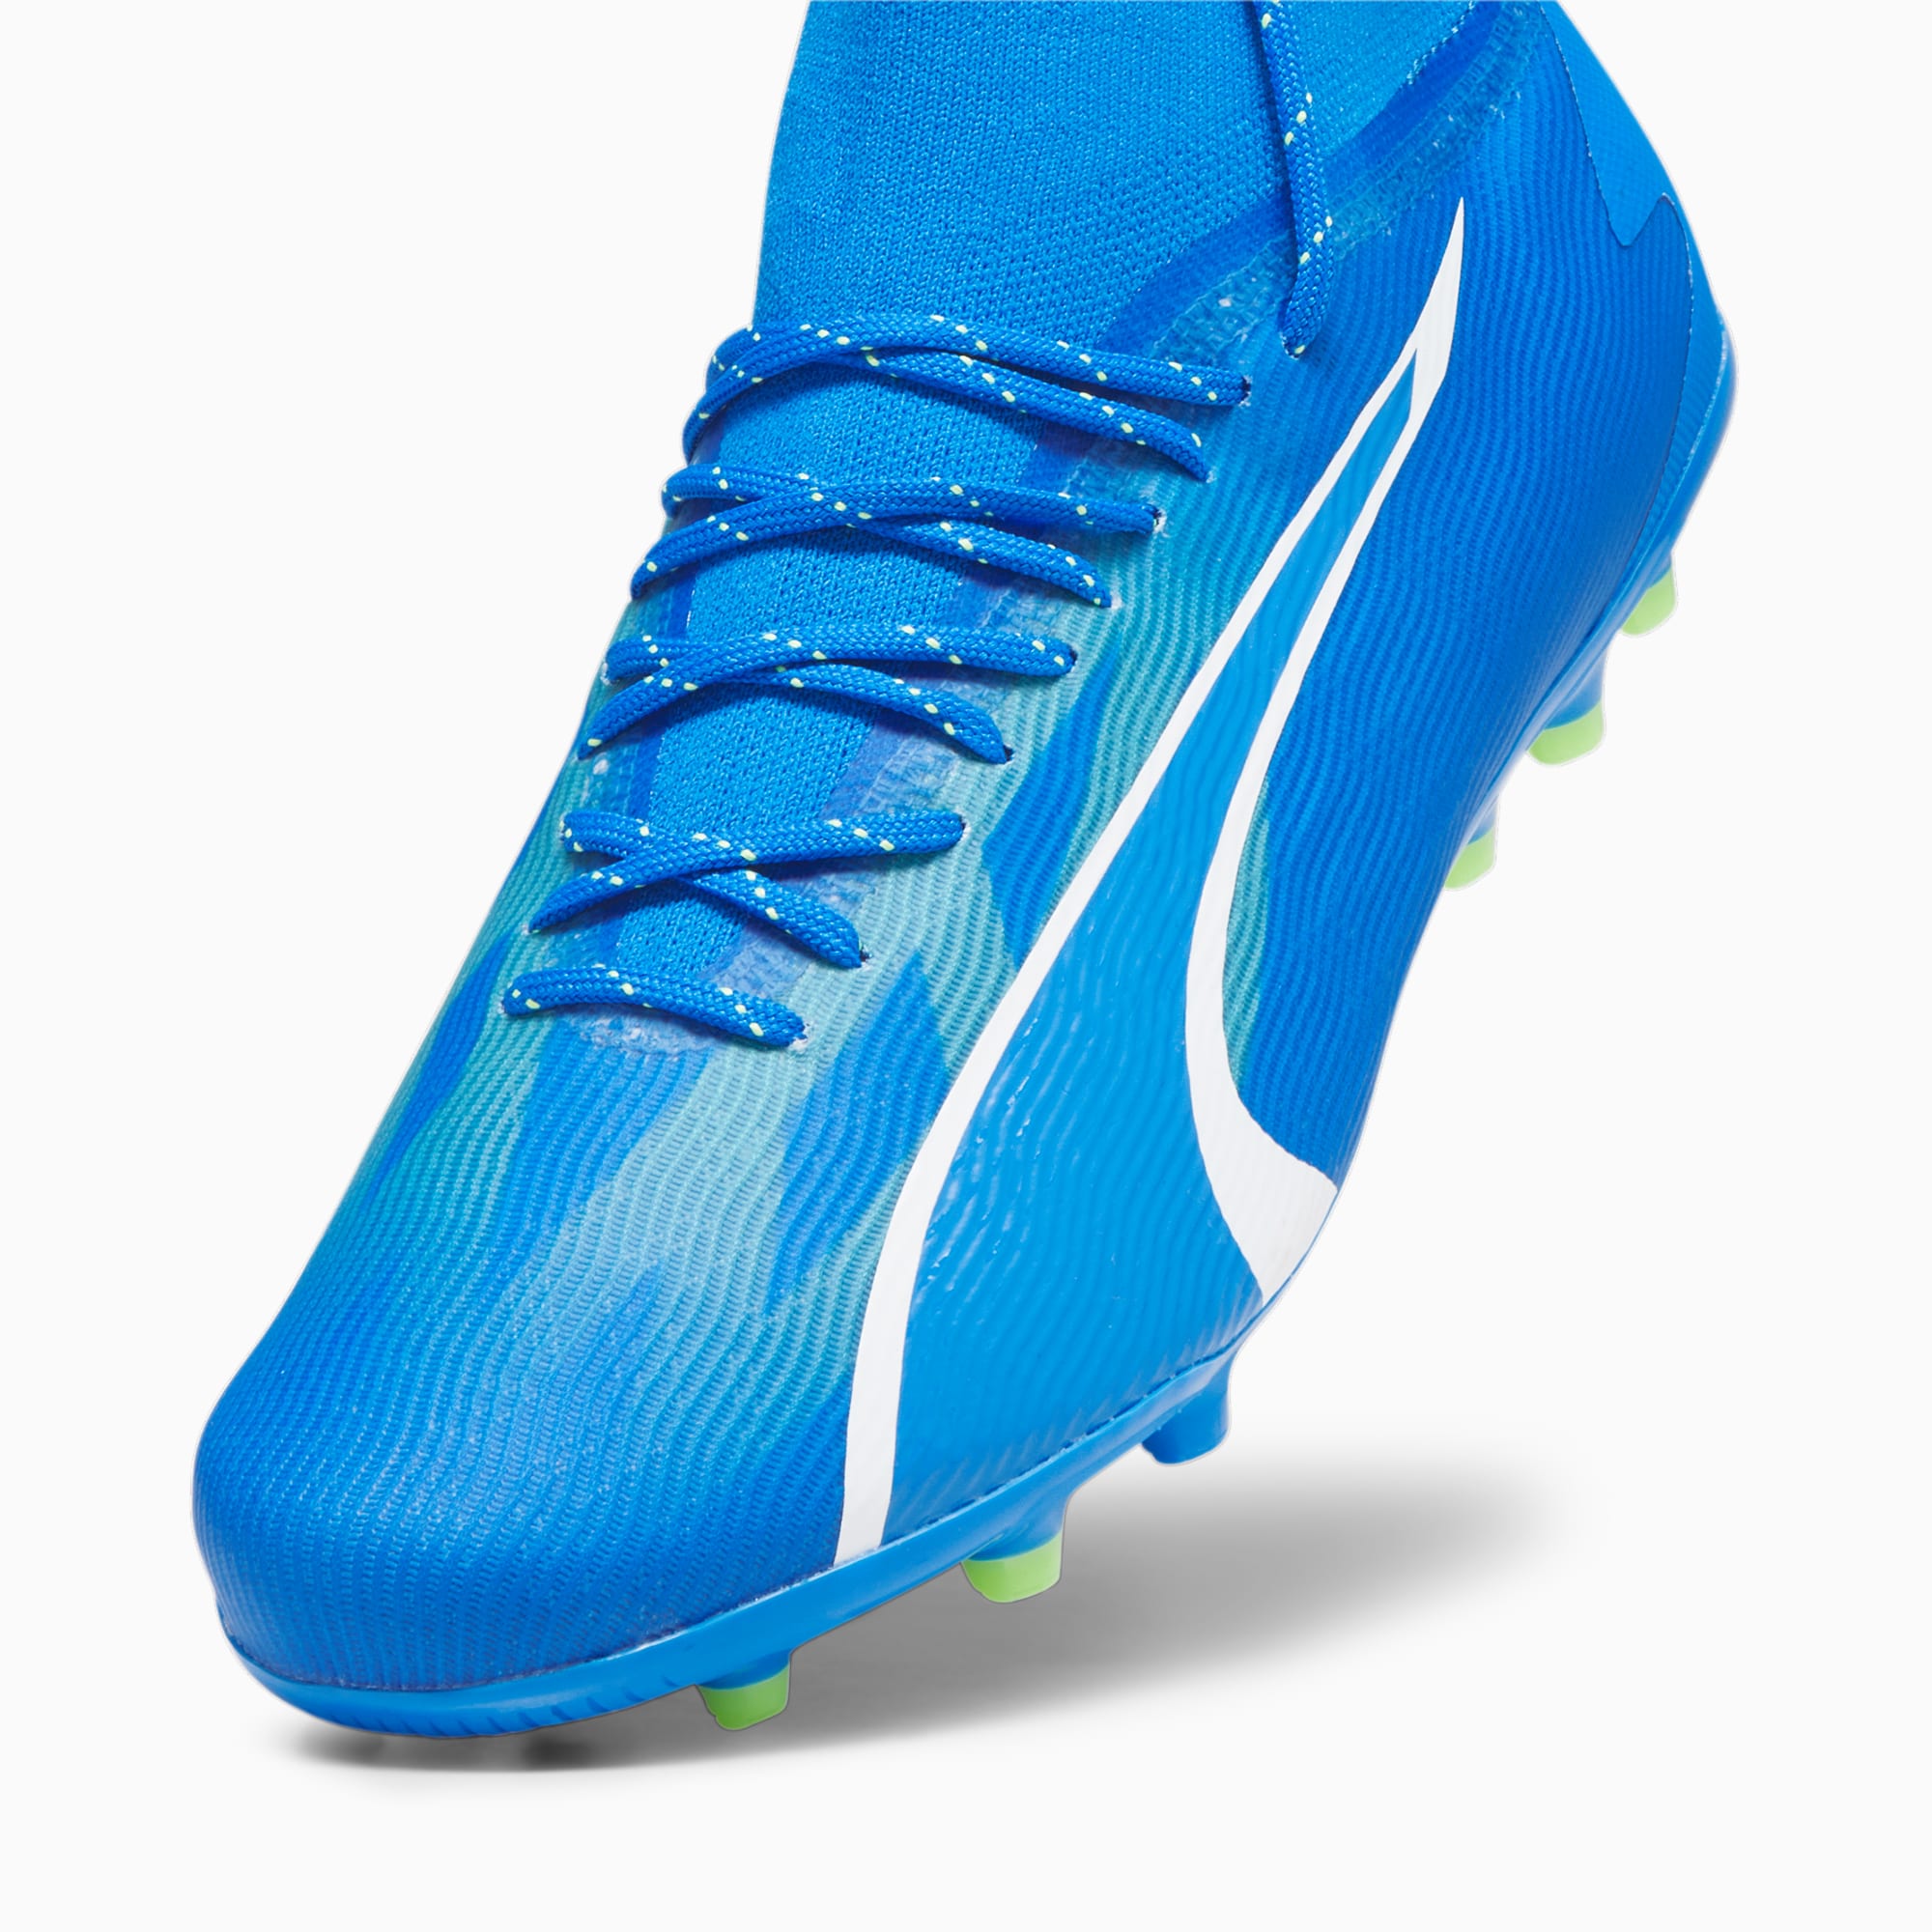 PUMA Chaussures De Football ULTRA PRO MG Pour Homme, Bleu/Vert/Blanc